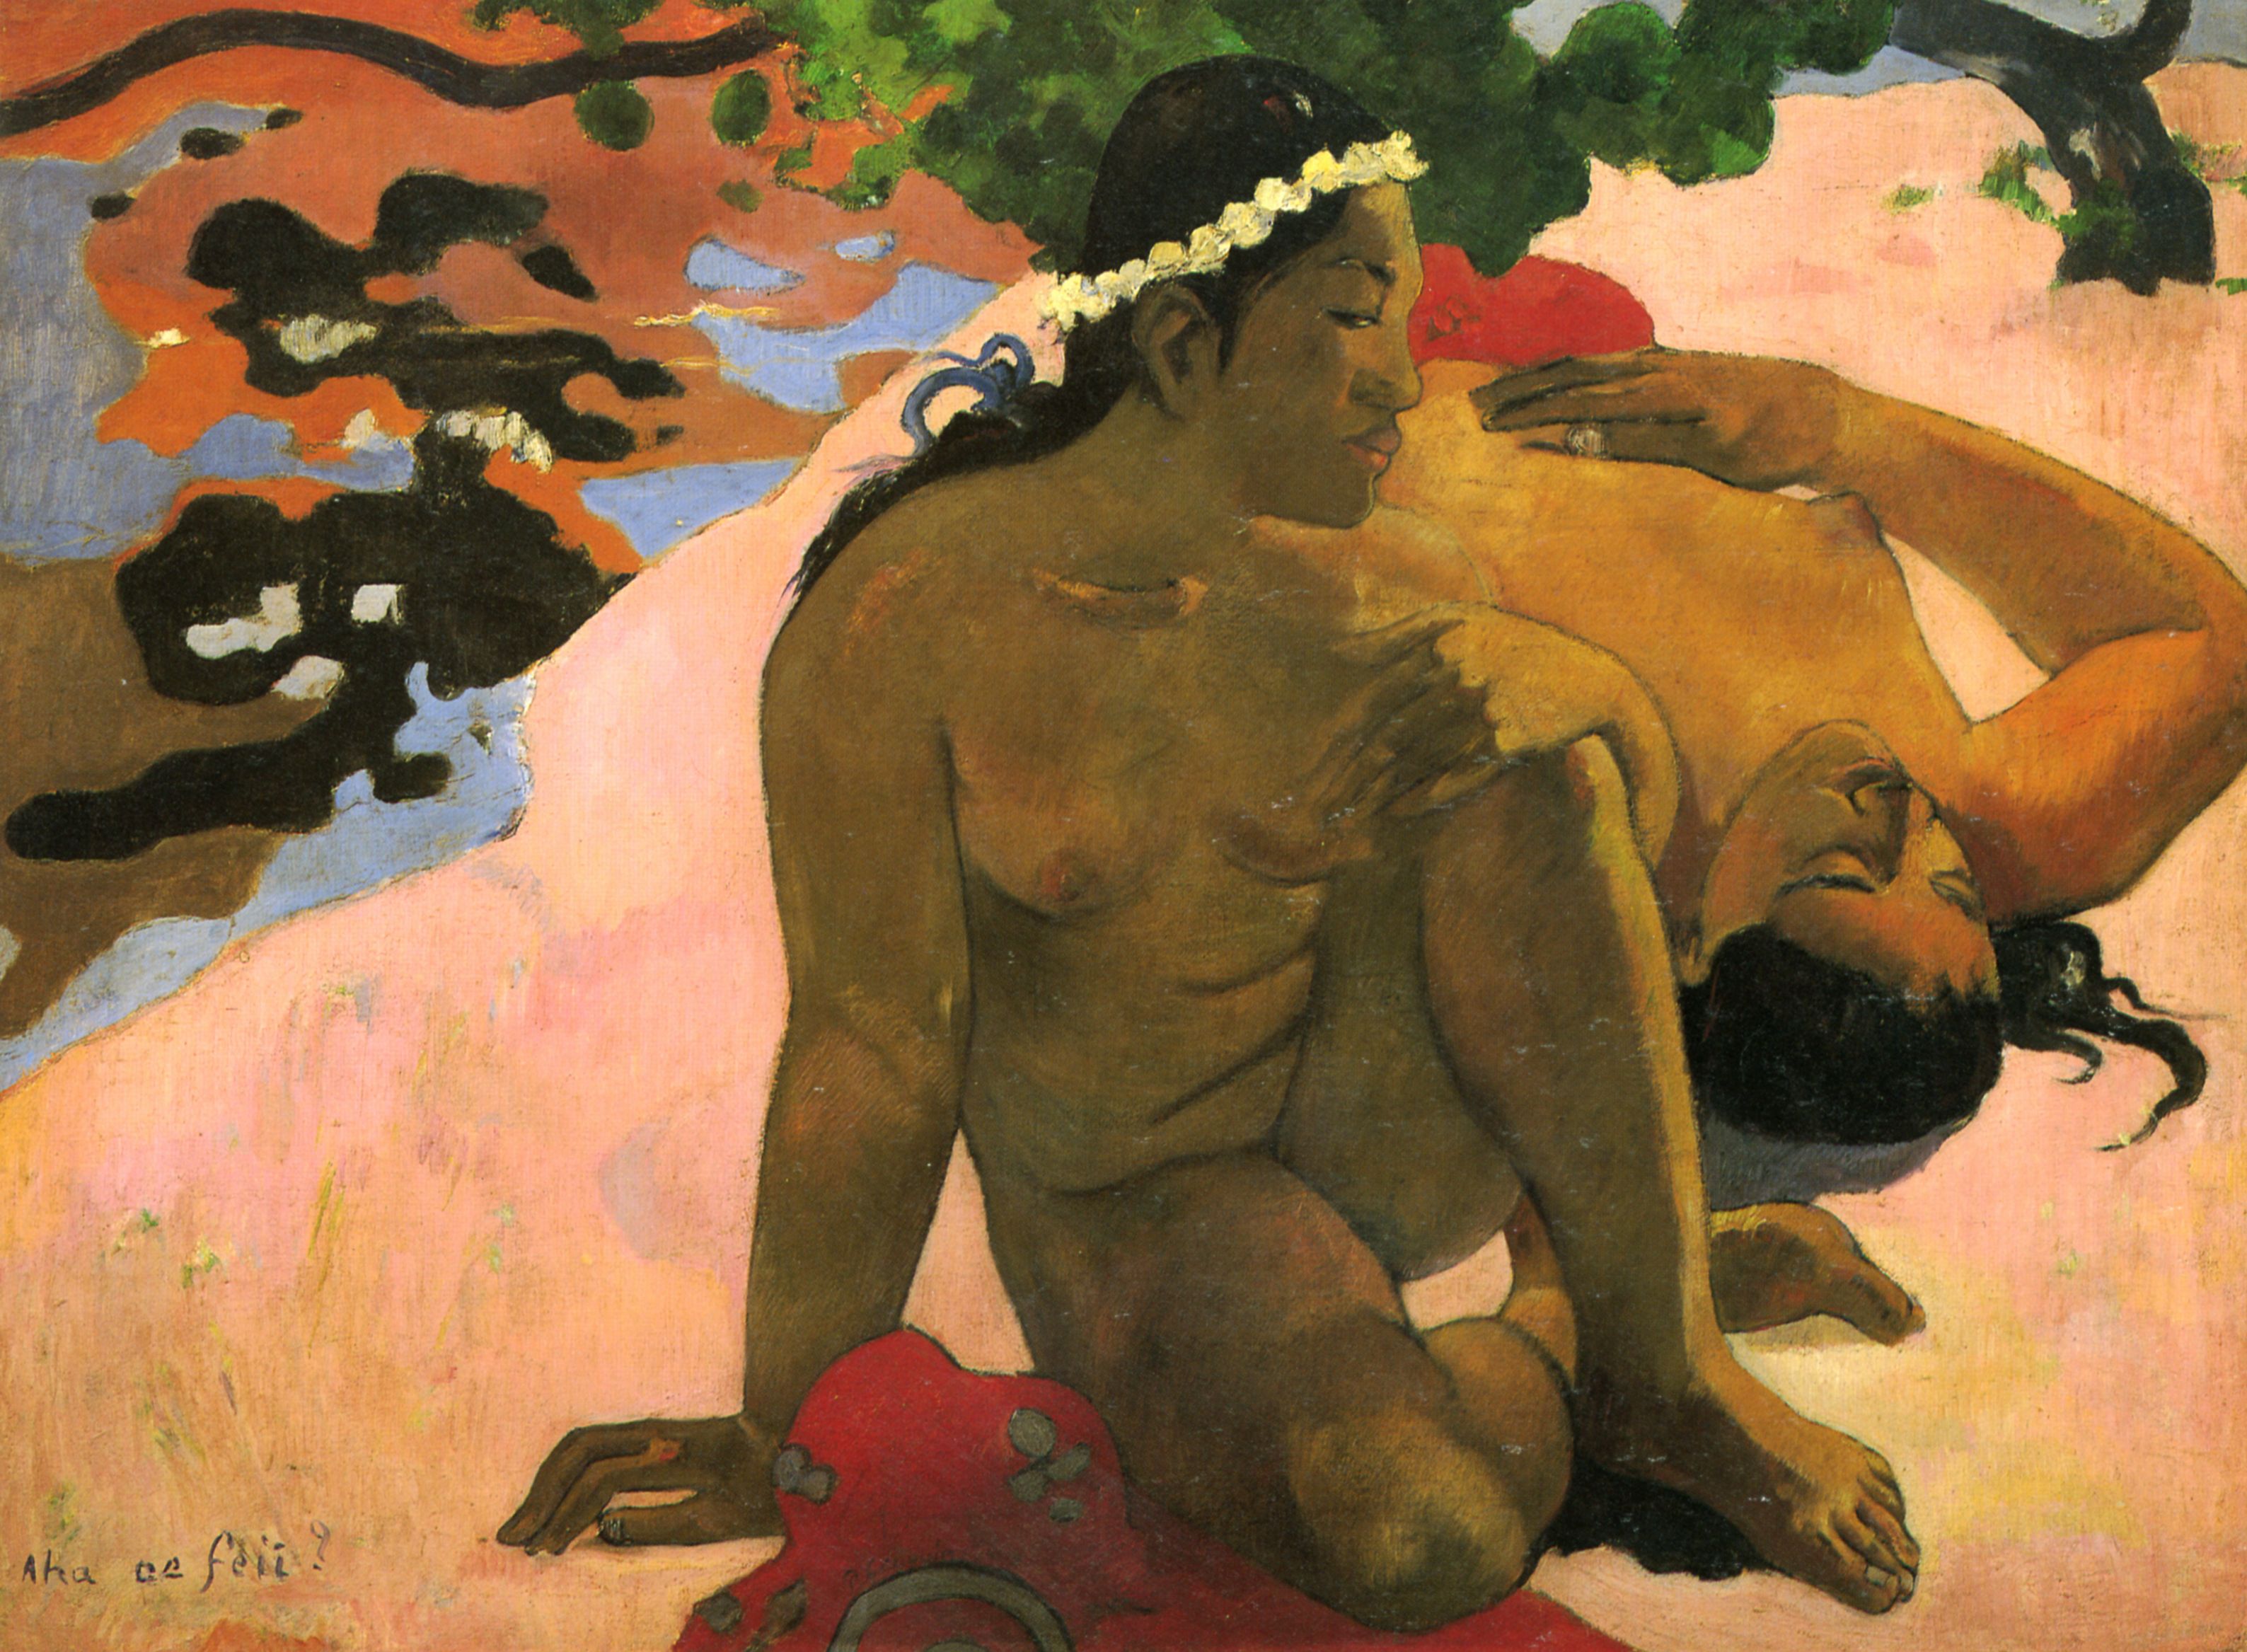 Paul Gauguin: Wie? Bist du eiferschtig? (Aha oe feii?)